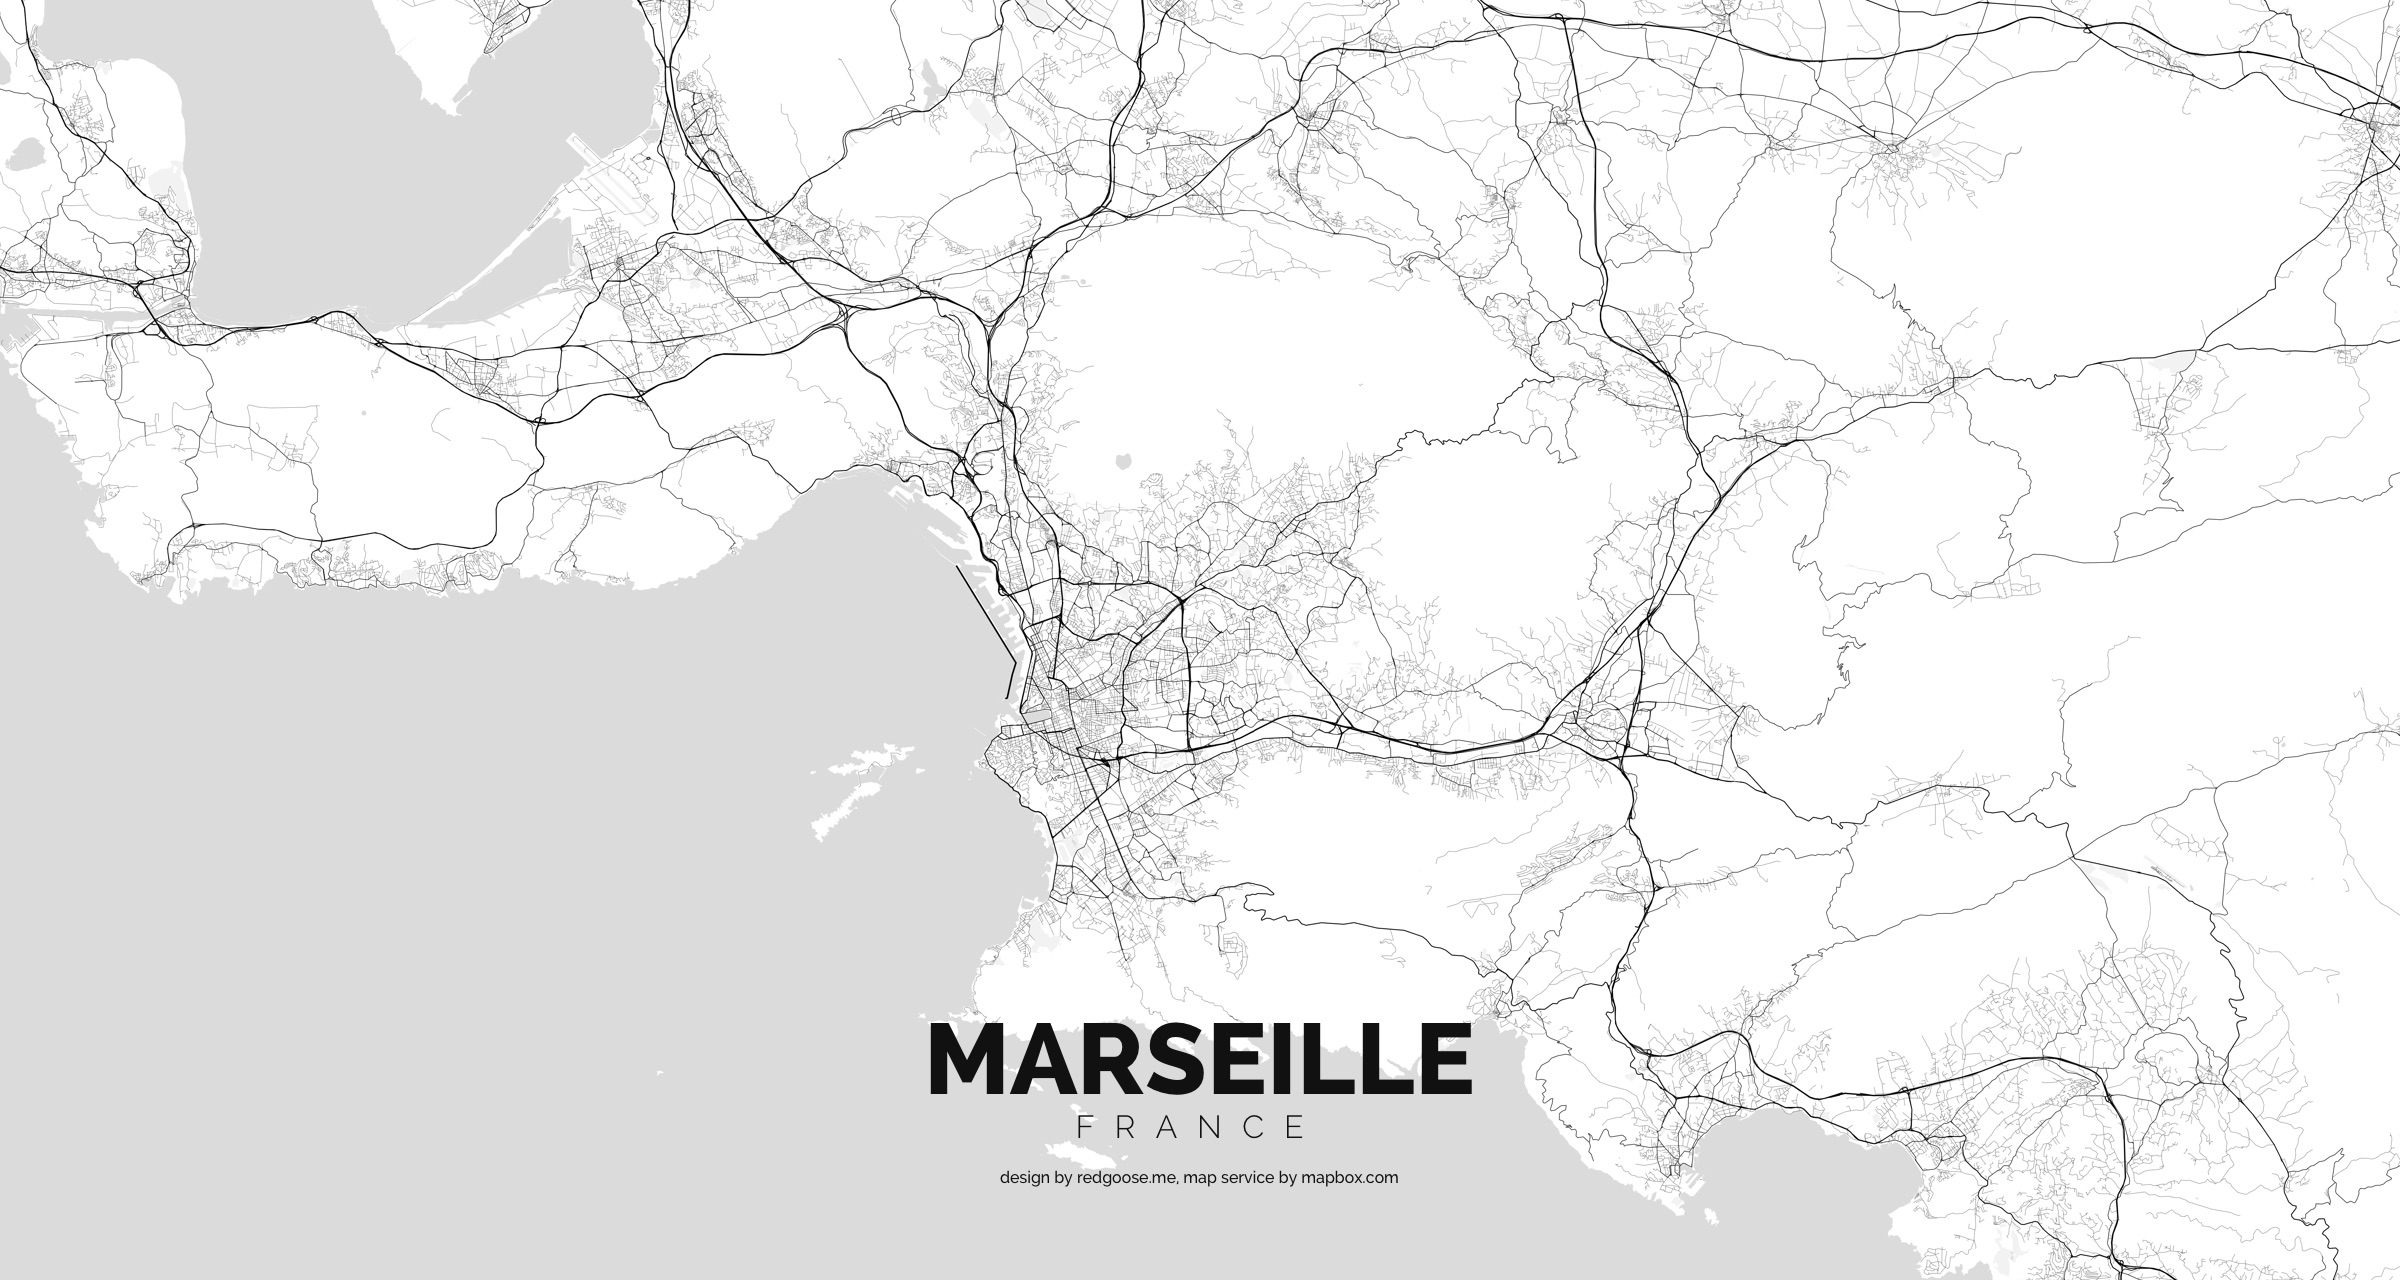 France_-_Marseille.jpg